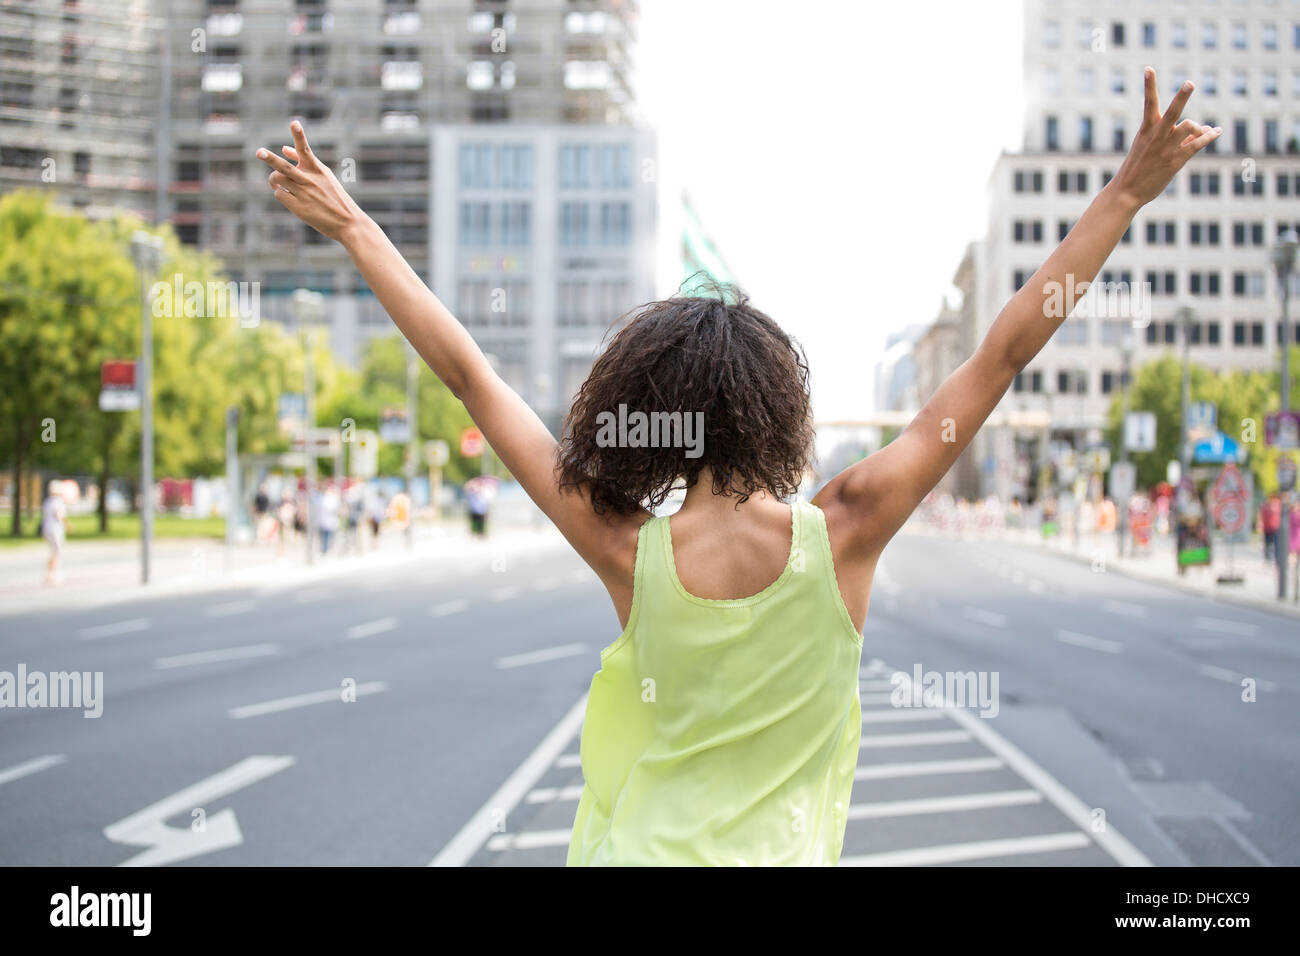 Allemagne, Berlin, les jeunes femmes dans la ville, rendant la victoire, vue arrière Banque D'Images